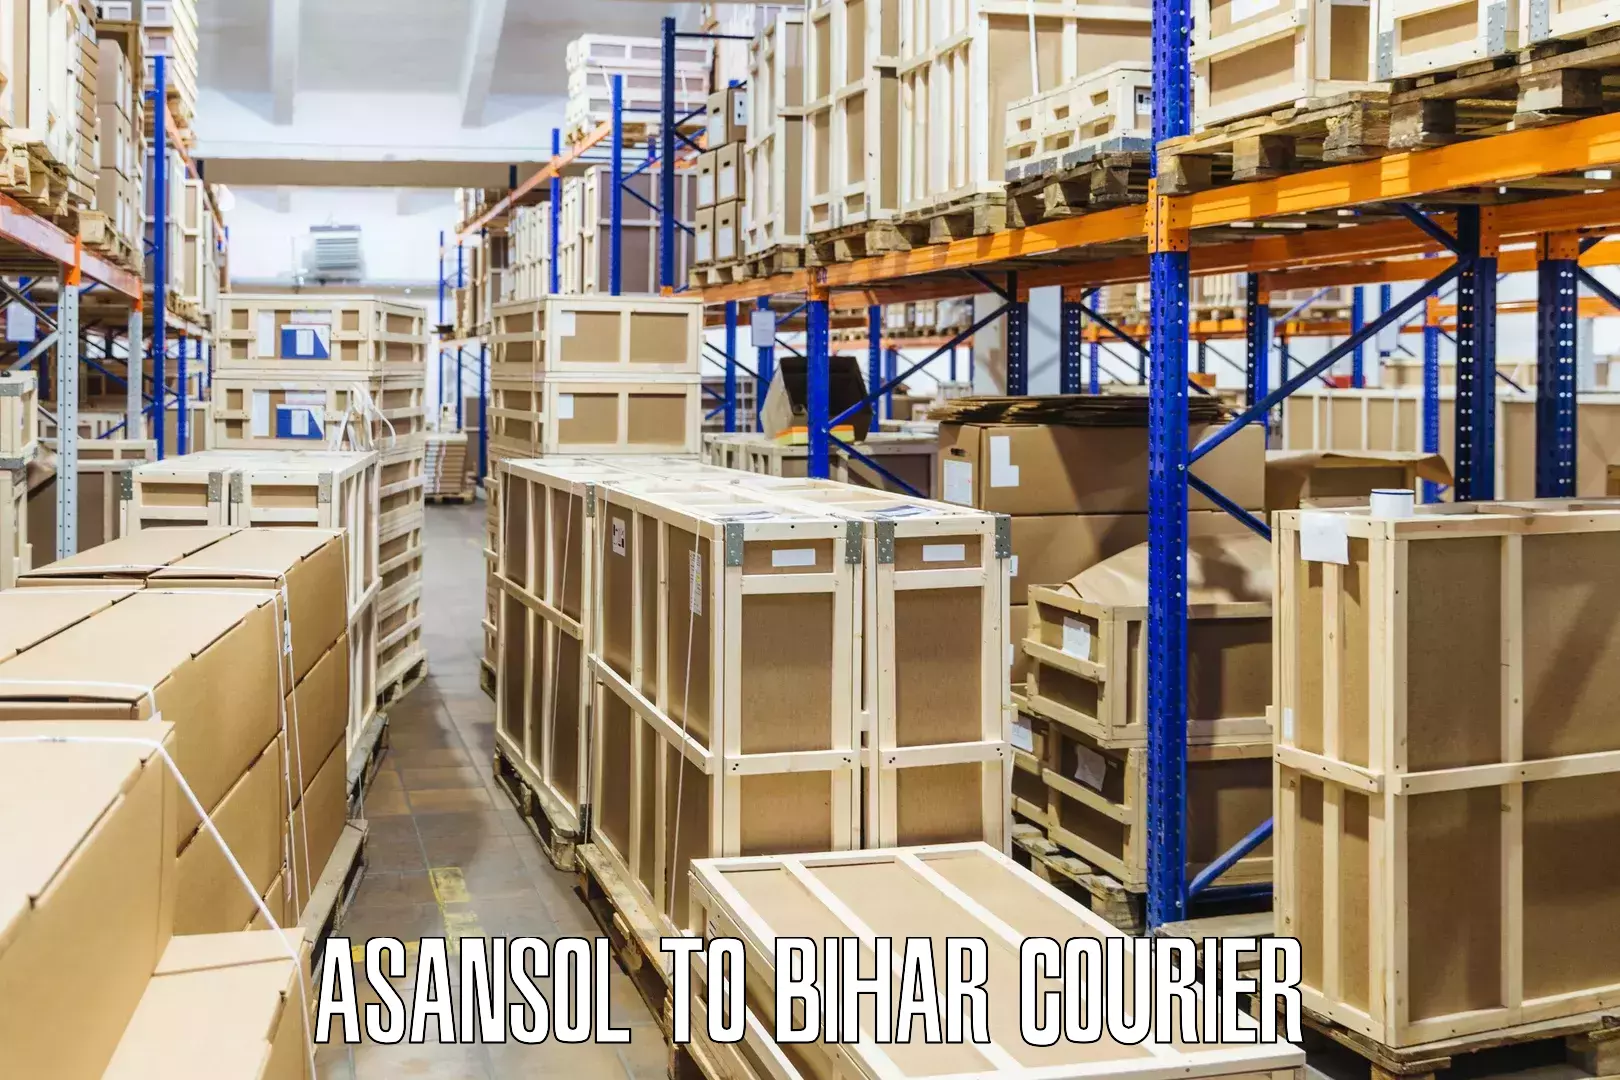 Customer-centric shipping Asansol to Bihar